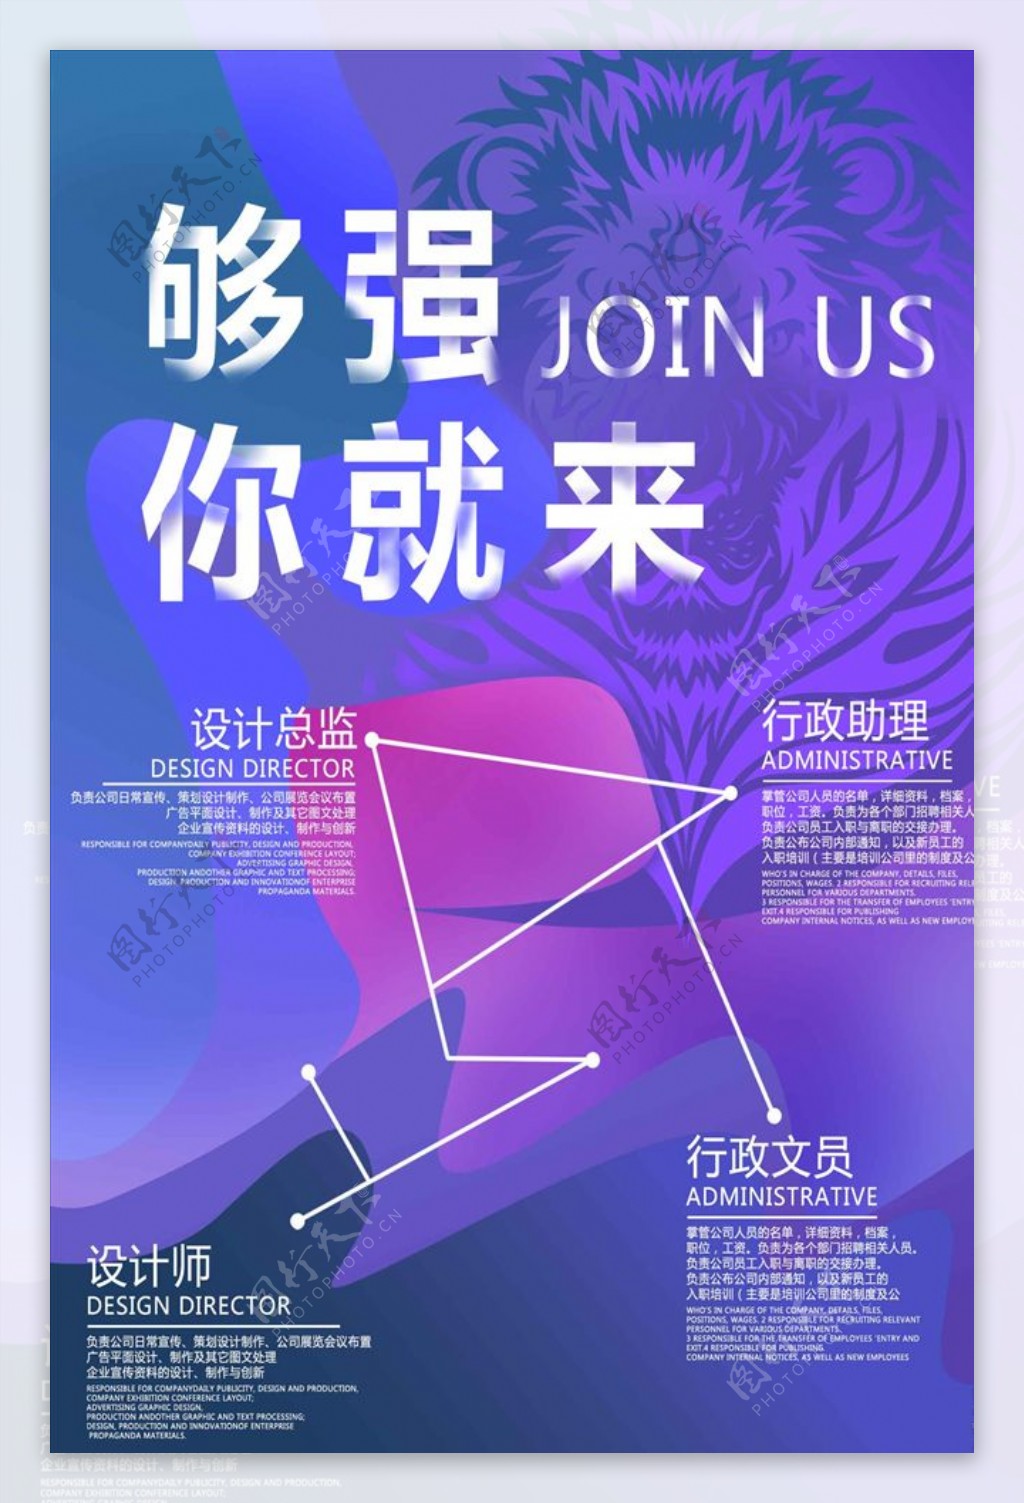 紫色系梦幻招聘海报模板设计